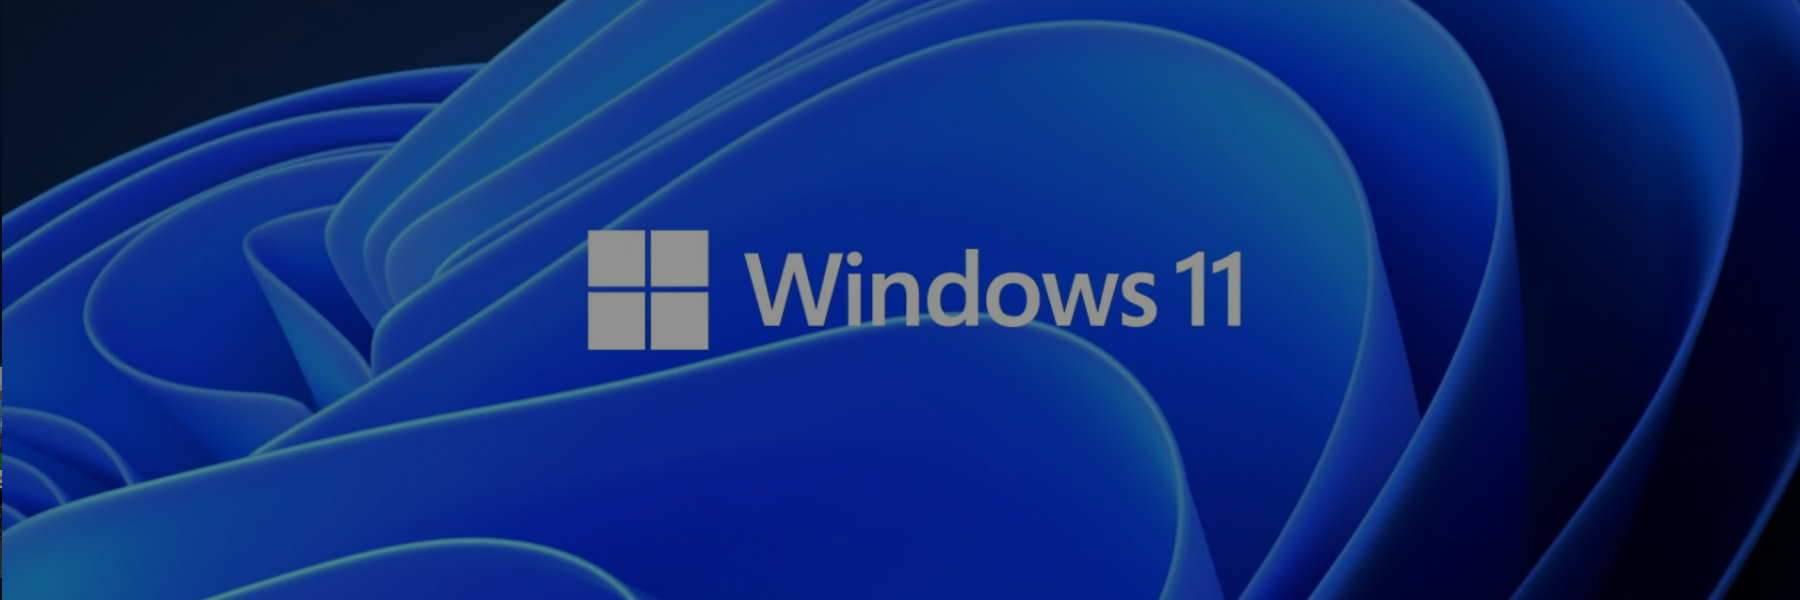 מערכת הפעלה Windows 11 - EXON - גיימינג ותוכנות - משחקים ותוכנות למחשב ולאקס בוקס!